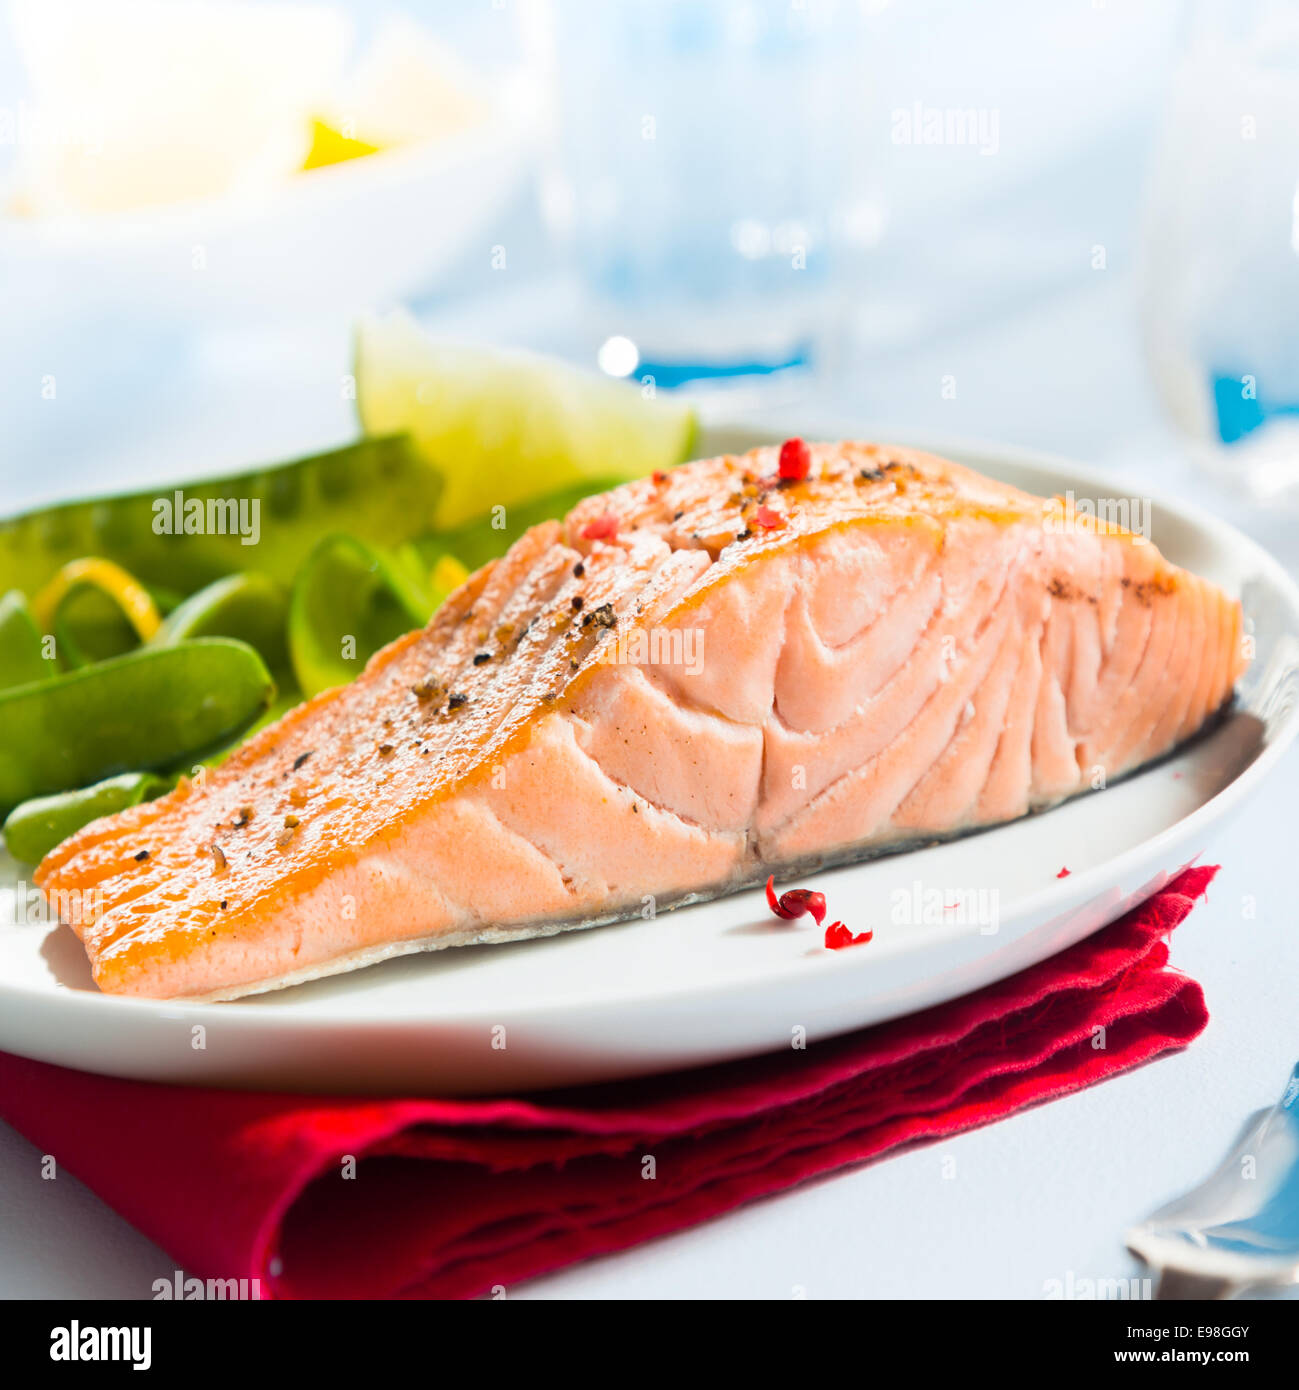 Sana rosa gourmet bistecca di salmone ricco di omega 3 servita con fresco verde taccole piselli e limone, vicino che mostra la consistenza del pesce Foto Stock